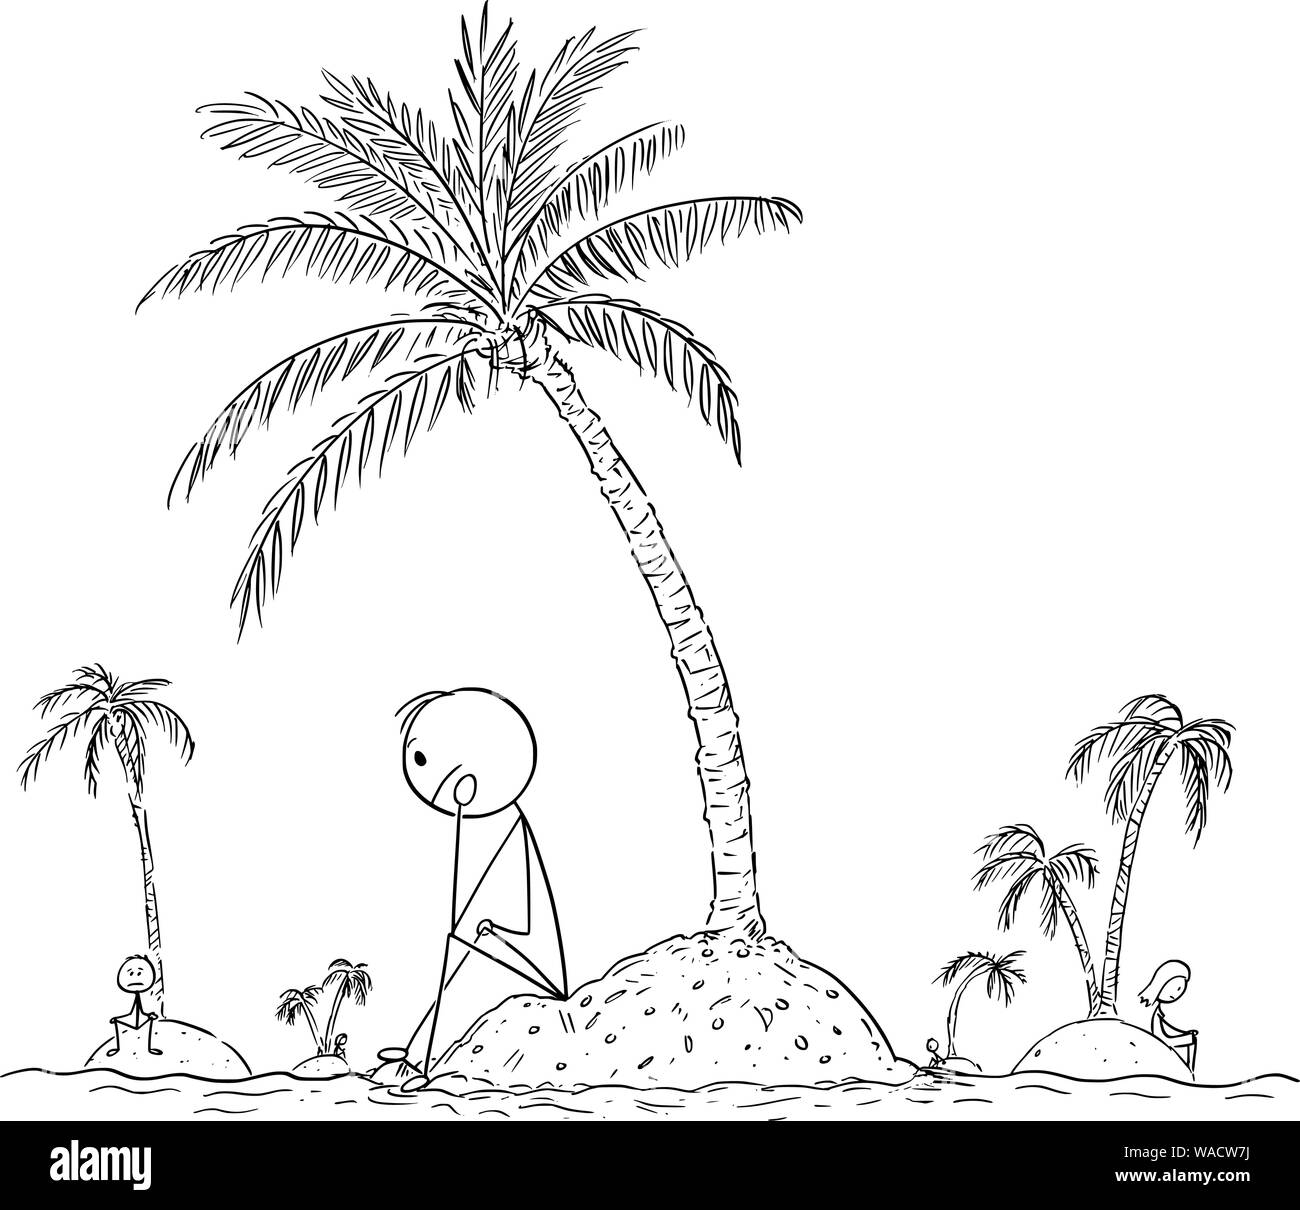 Vector cartoon stick figure le dessin d'illustration conceptuelle des personnes seules vivant seule sur de petites îles, sans amis ou de la société humaine. Concept de la solitude. Illustration de Vecteur